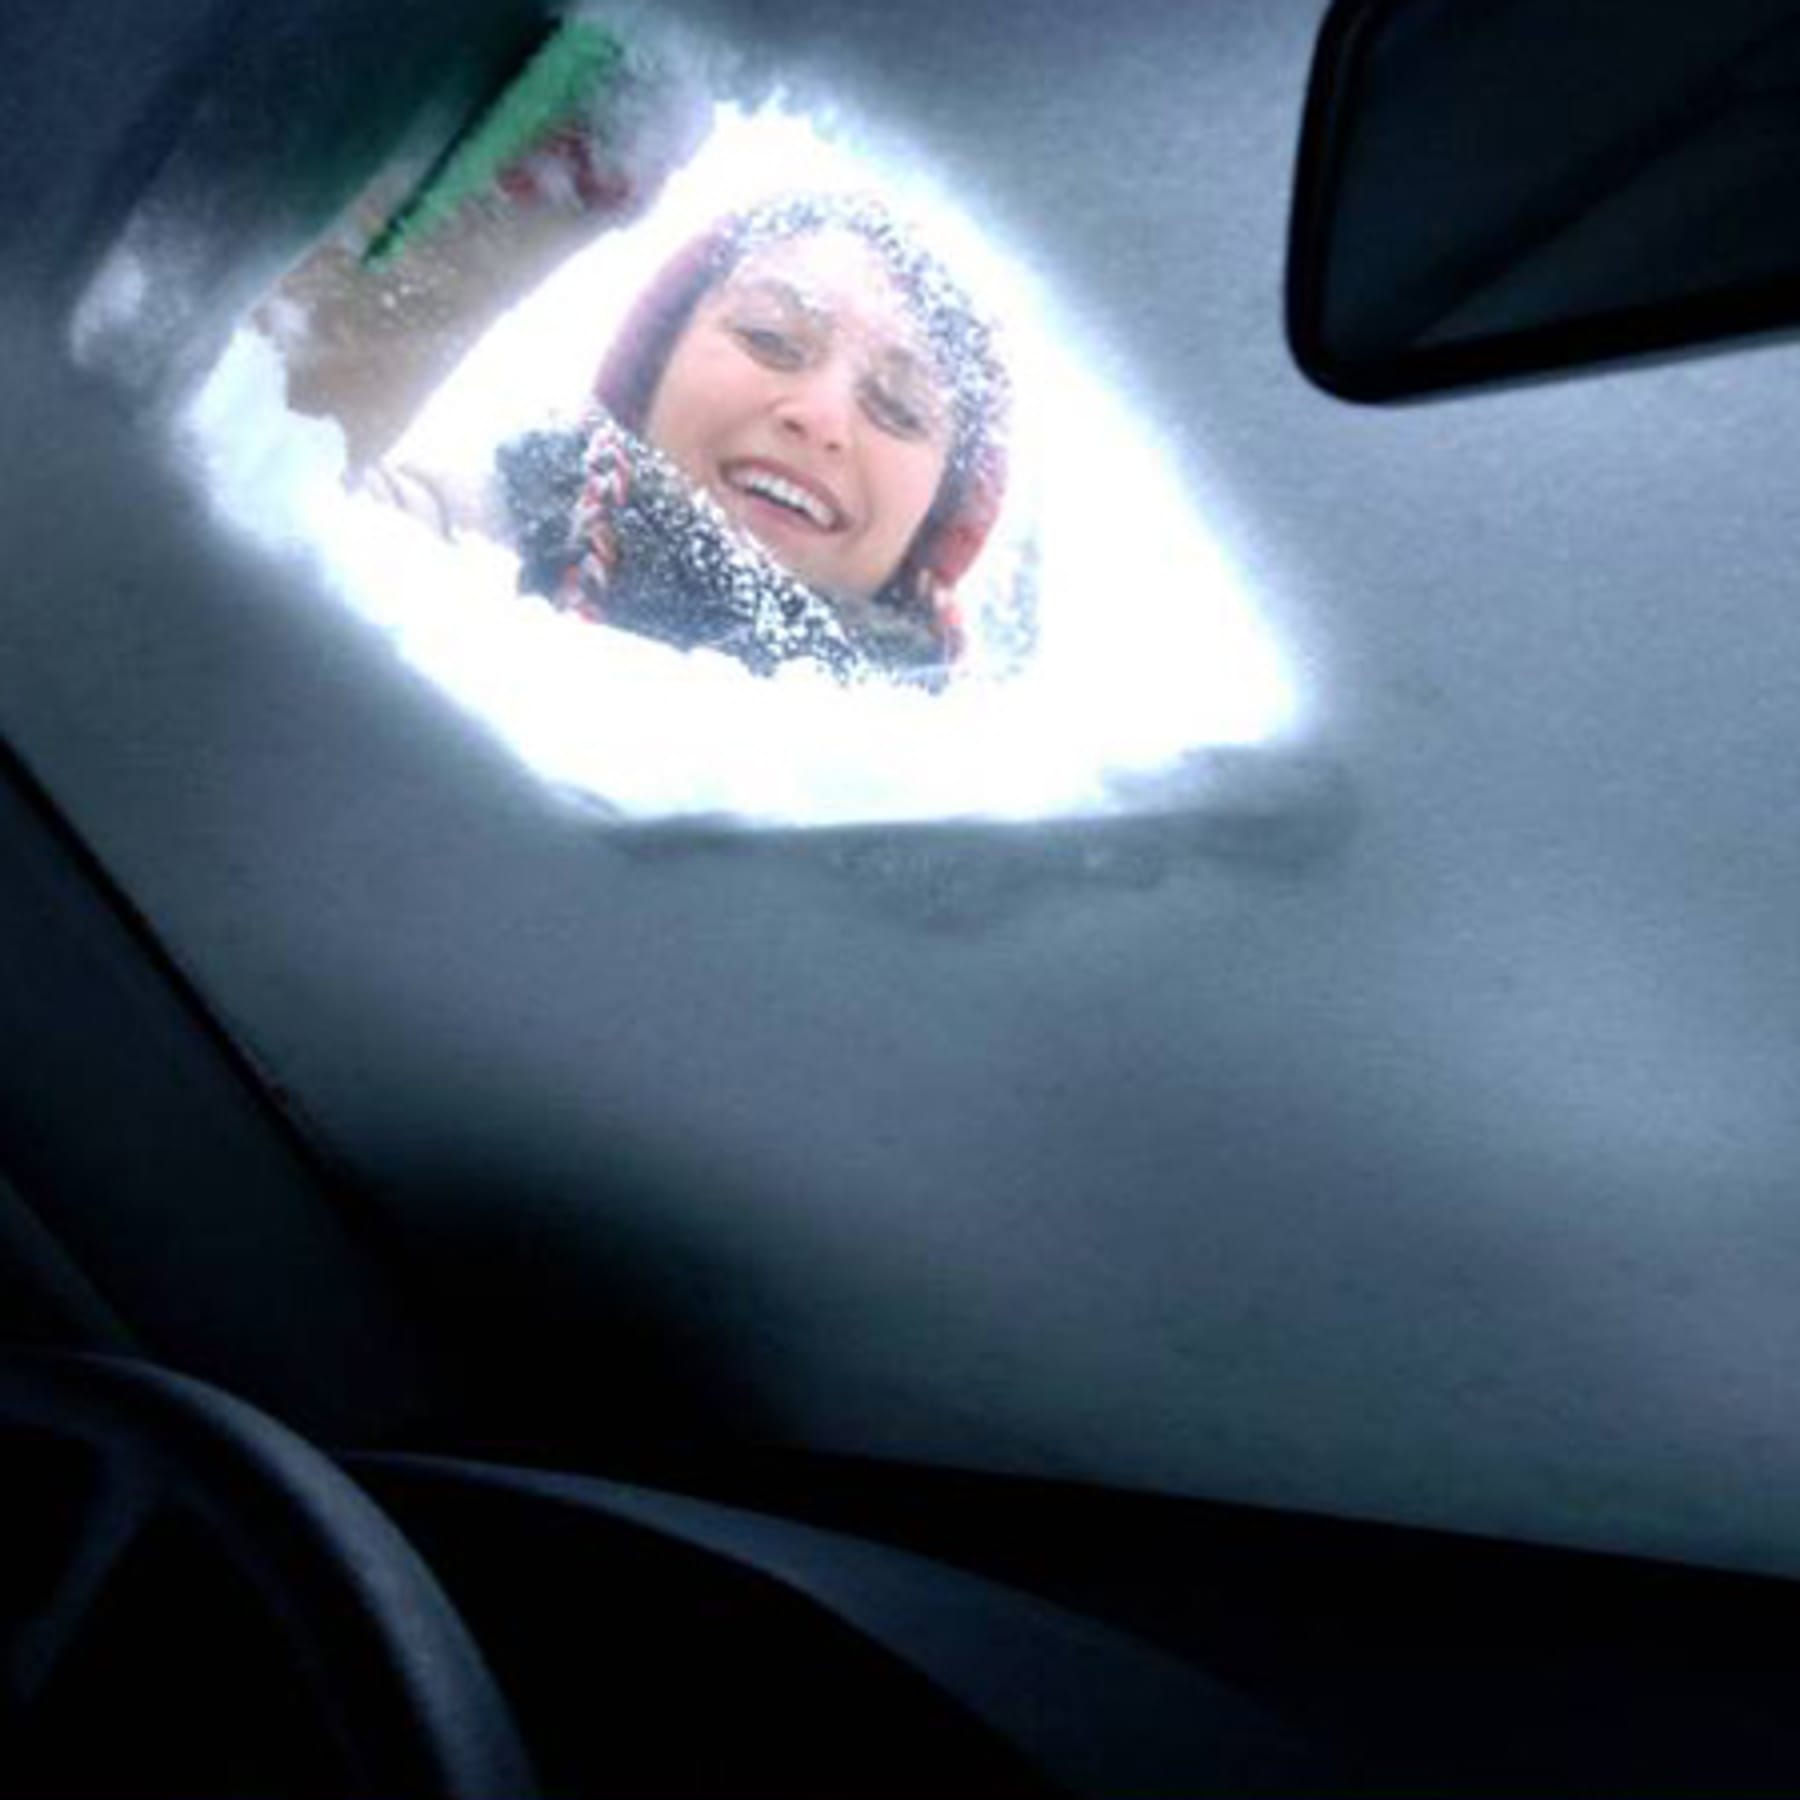 Im Schnee festgefahren: So können Sie Ihr Auto selbst befreien